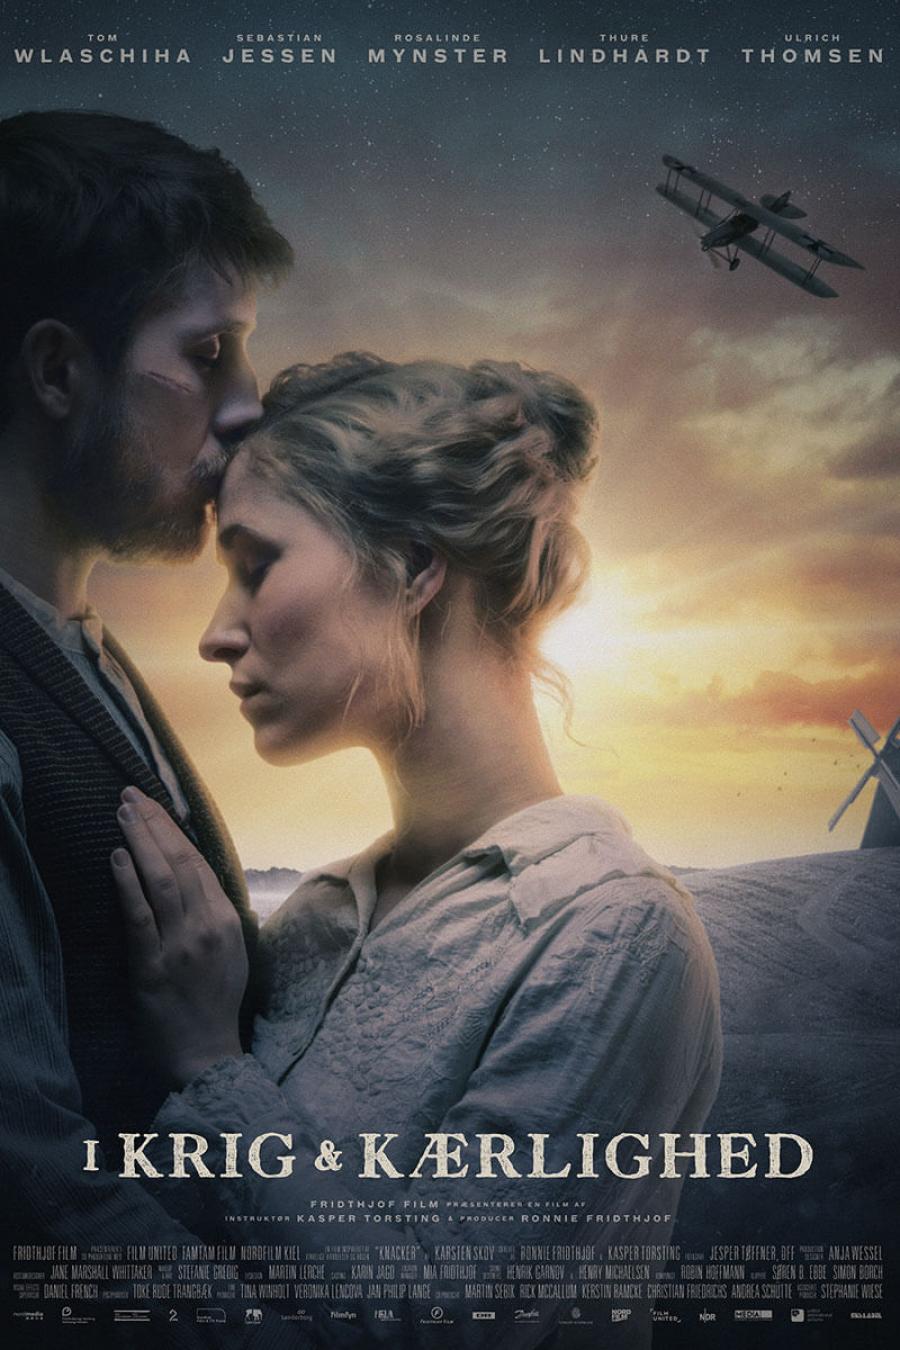 Filmplakat for "I krig & kærlighed"